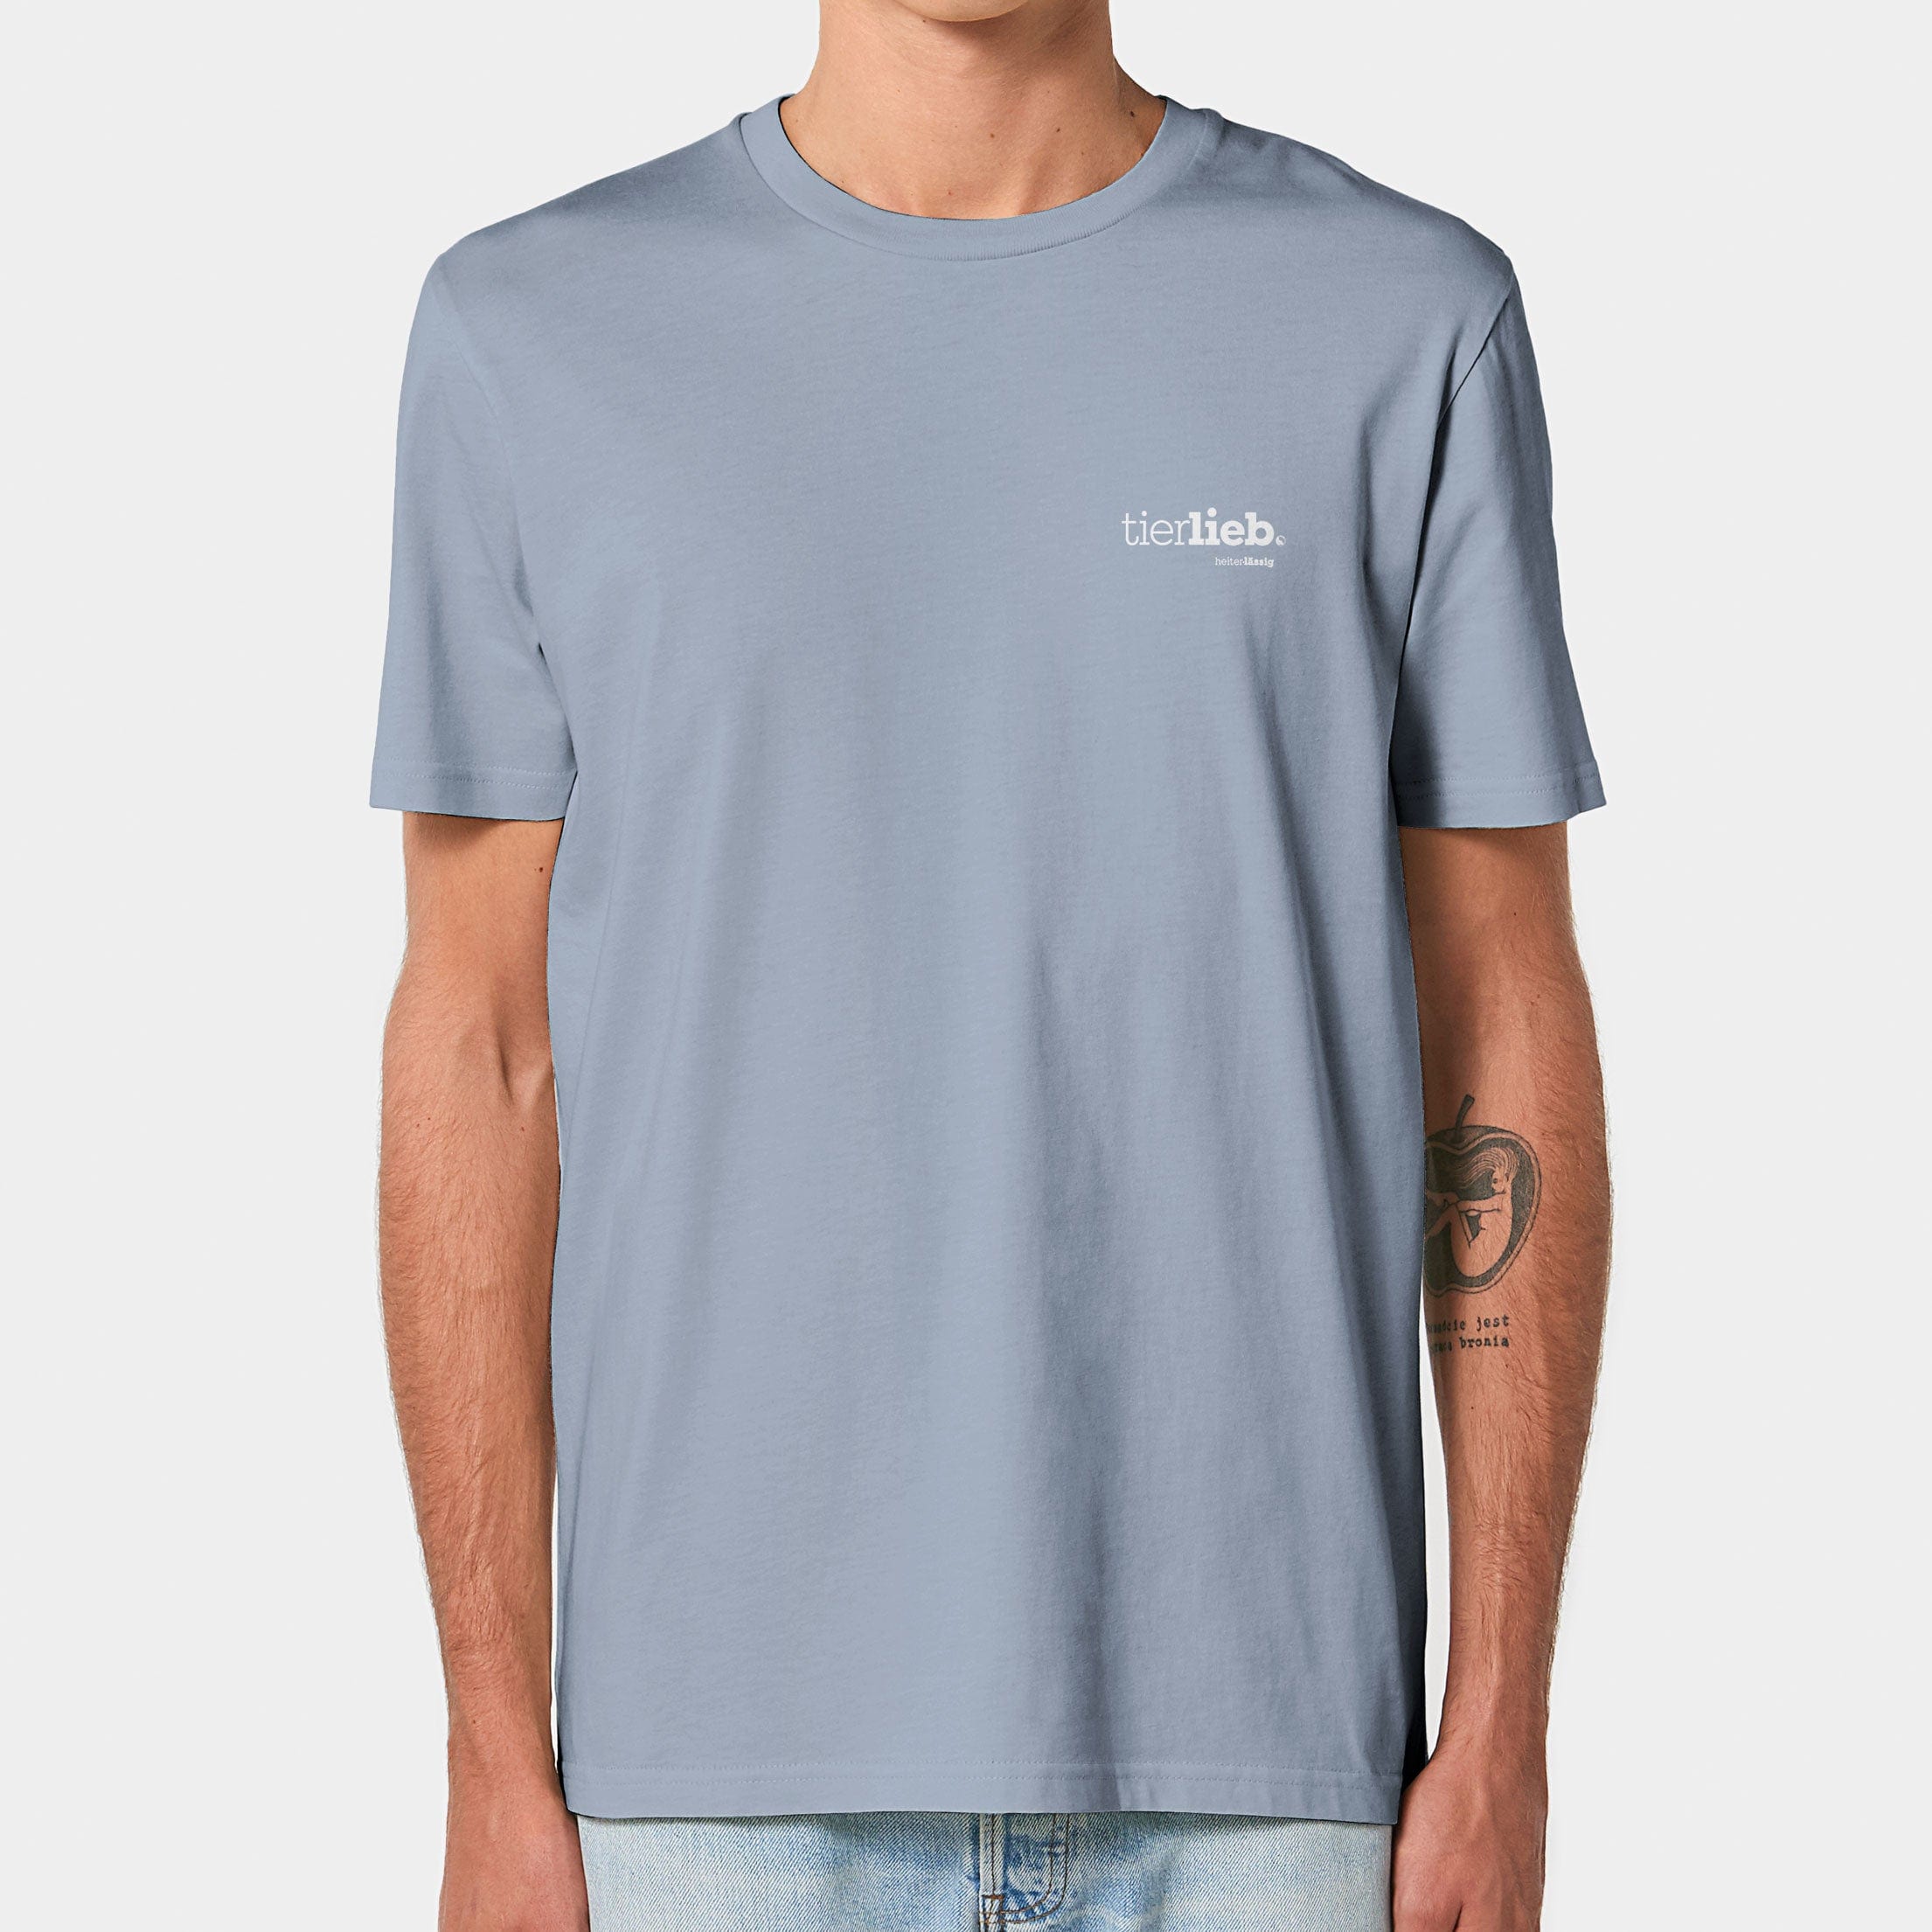 HEITER & LÄSSIG T-Shirt ORIGINAL "tierlieb" XXS / serene blue - aus nachhaltiger und fairer Produktion